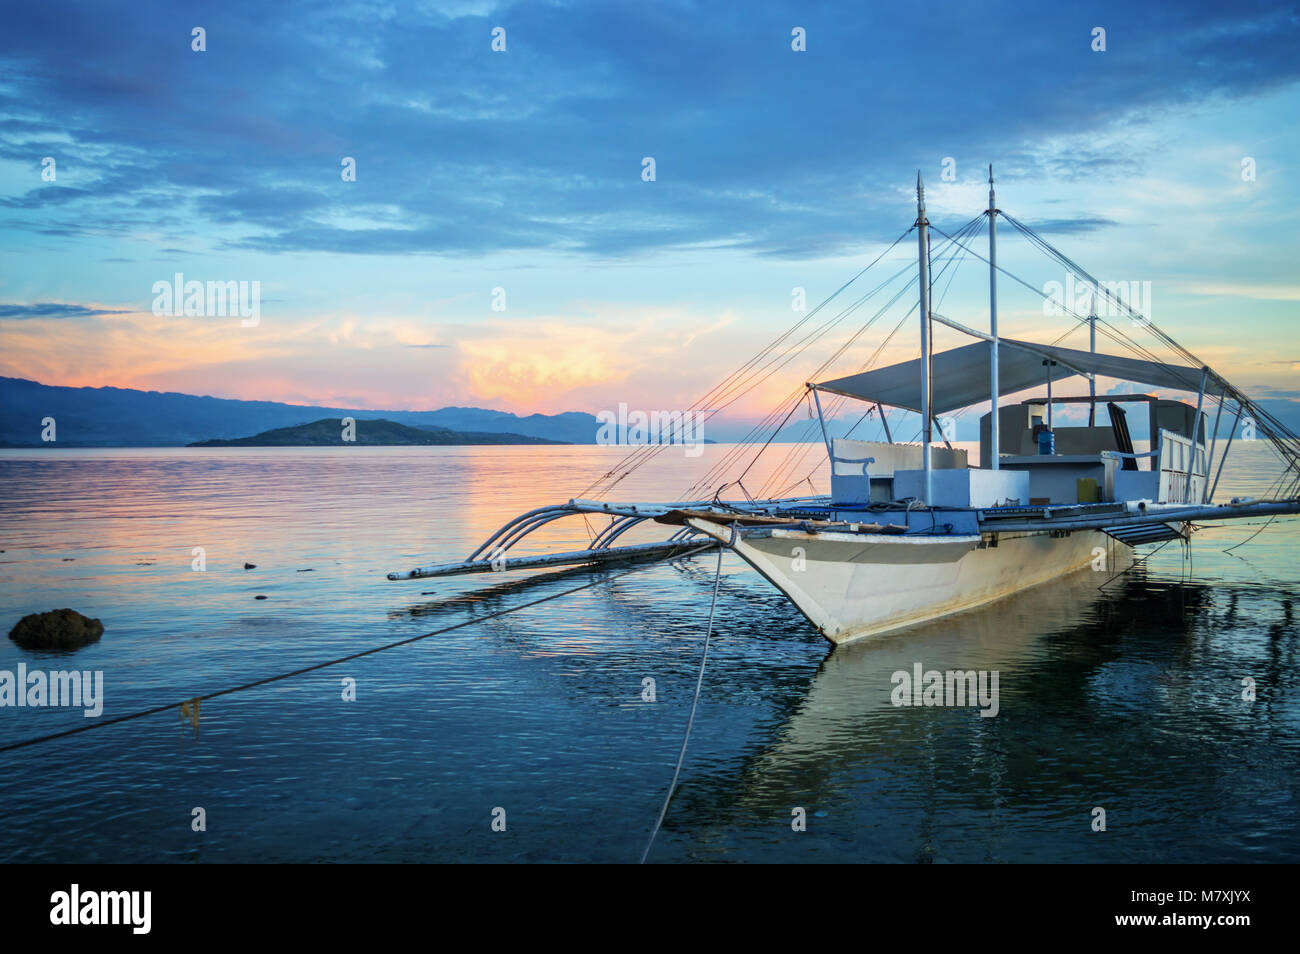 Banka, bateau de pêche traditionnelle des Philippines au coucher du soleil, l'île de Cebu, aux Philippines Banque D'Images